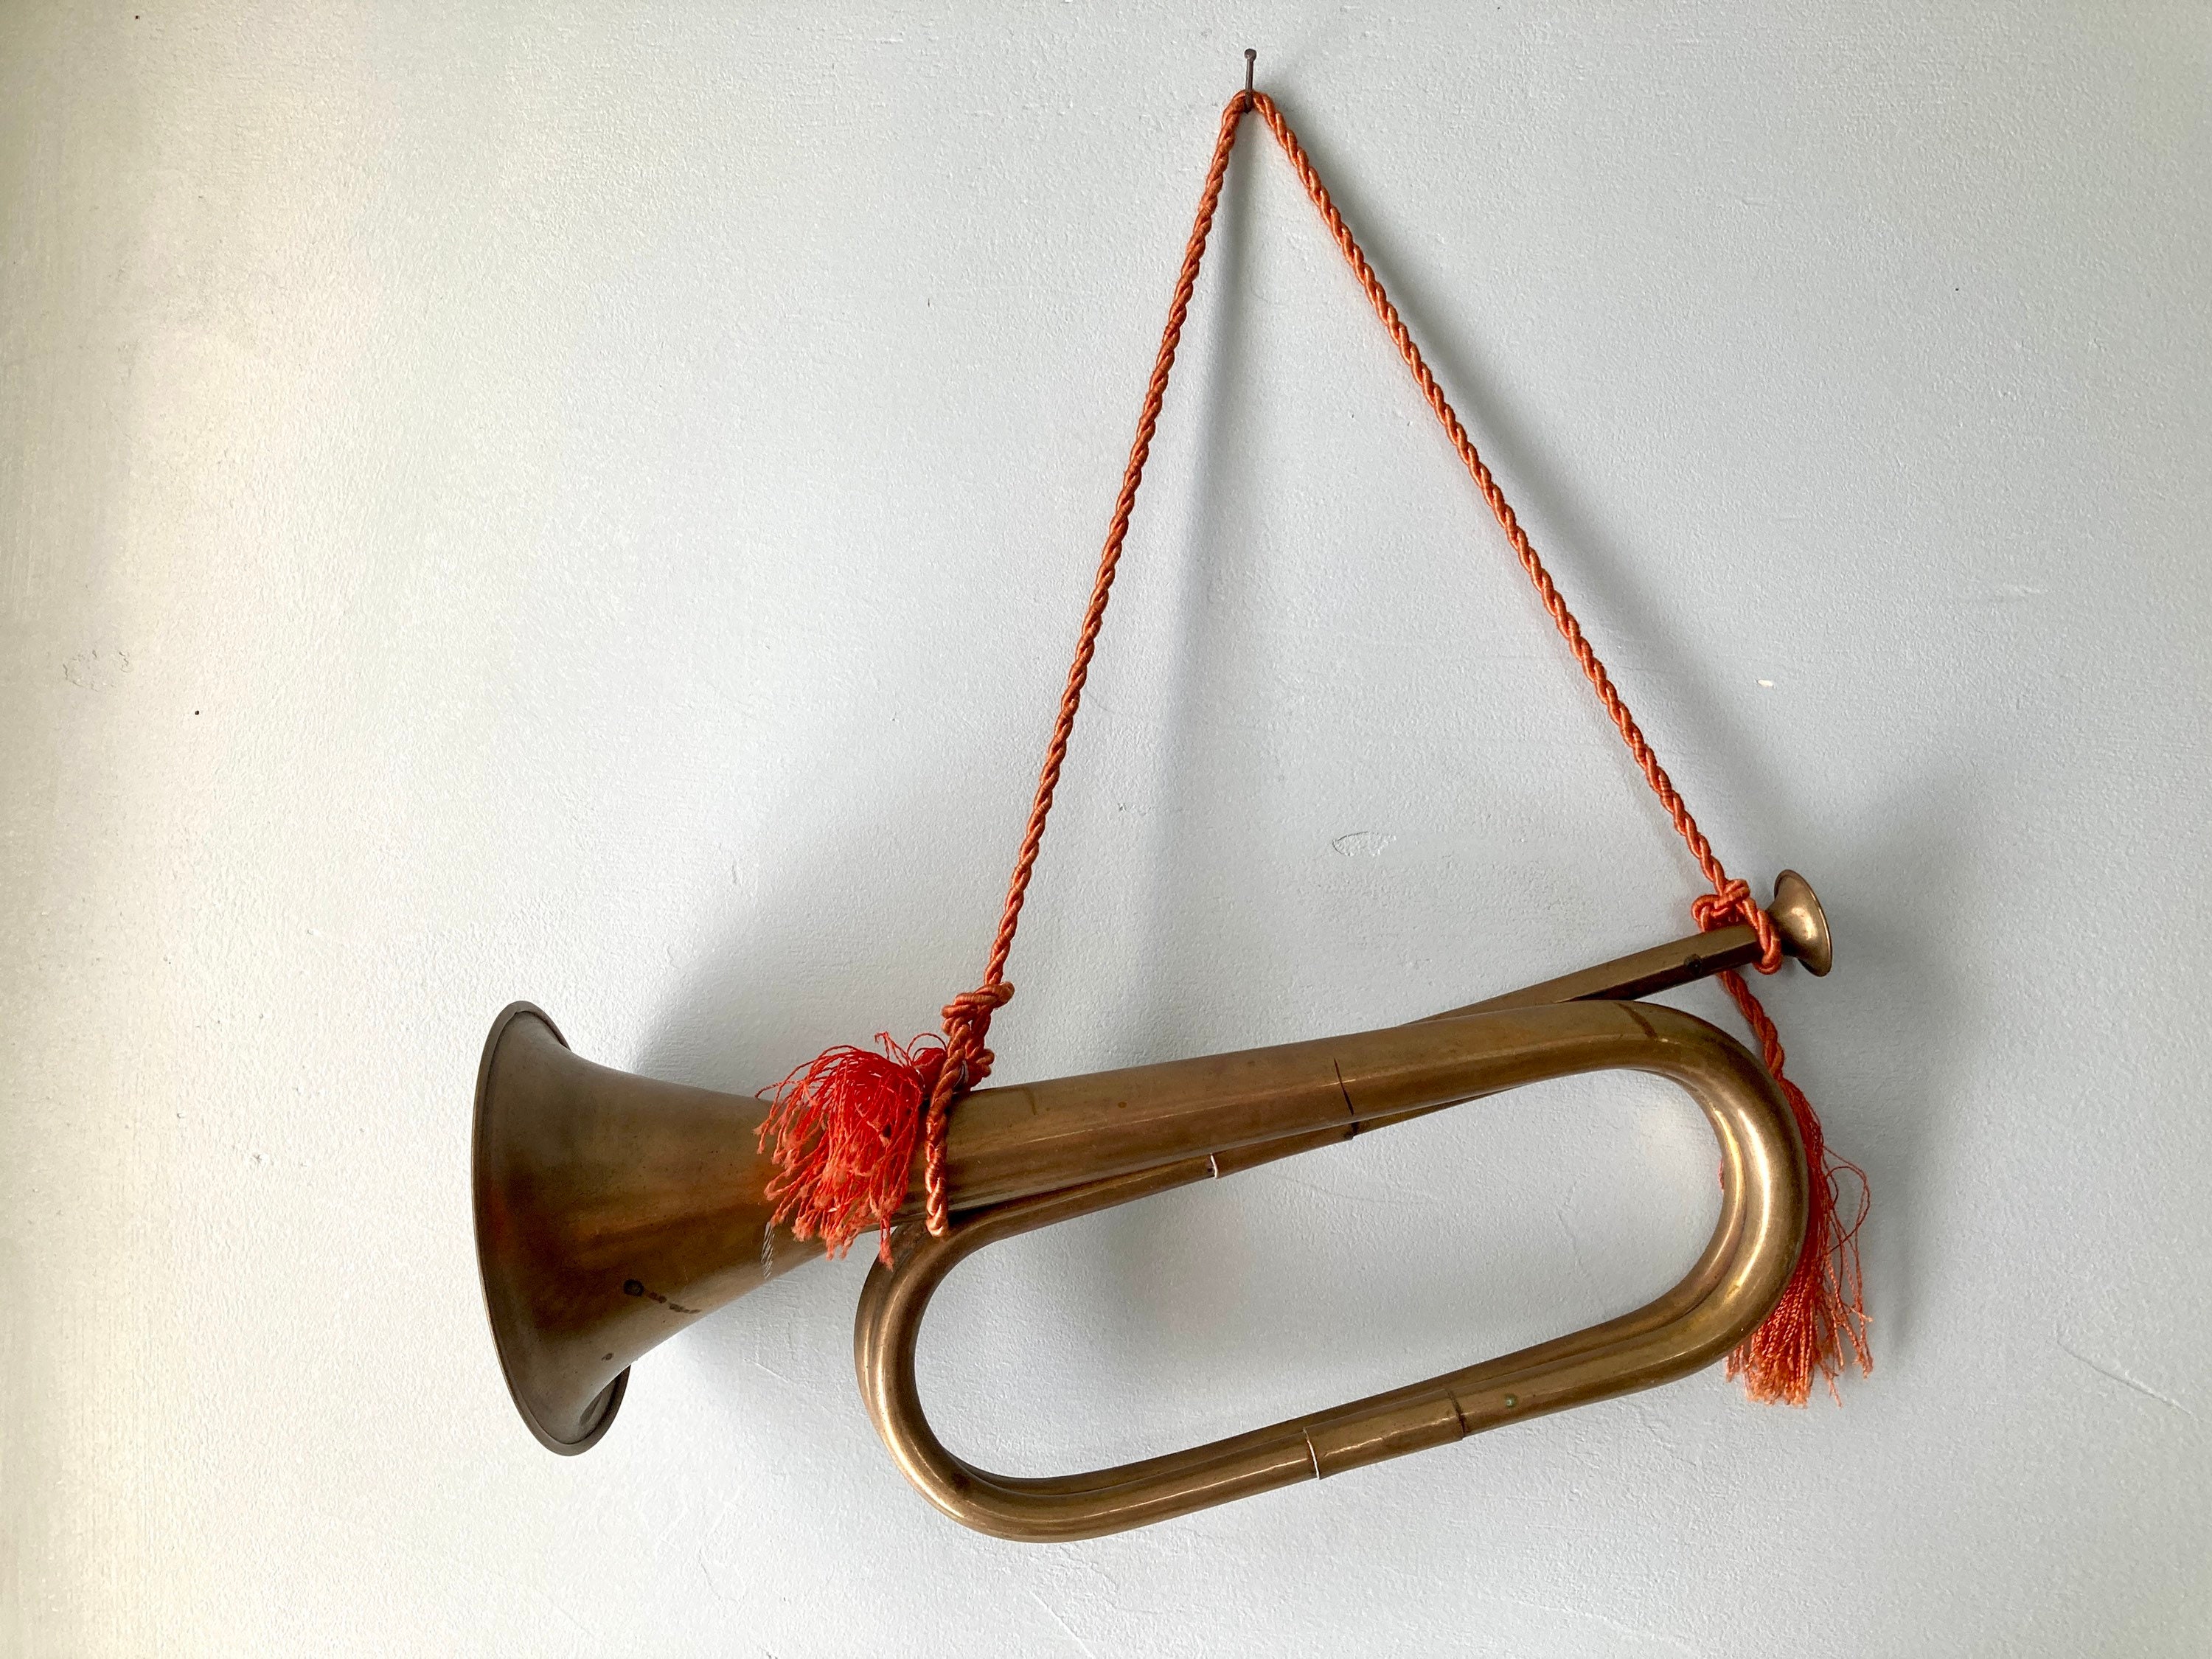 Antique Brass Bugle, Military Brass Bugle, Antique Carriage Bugle, Retro  Car Bugle 